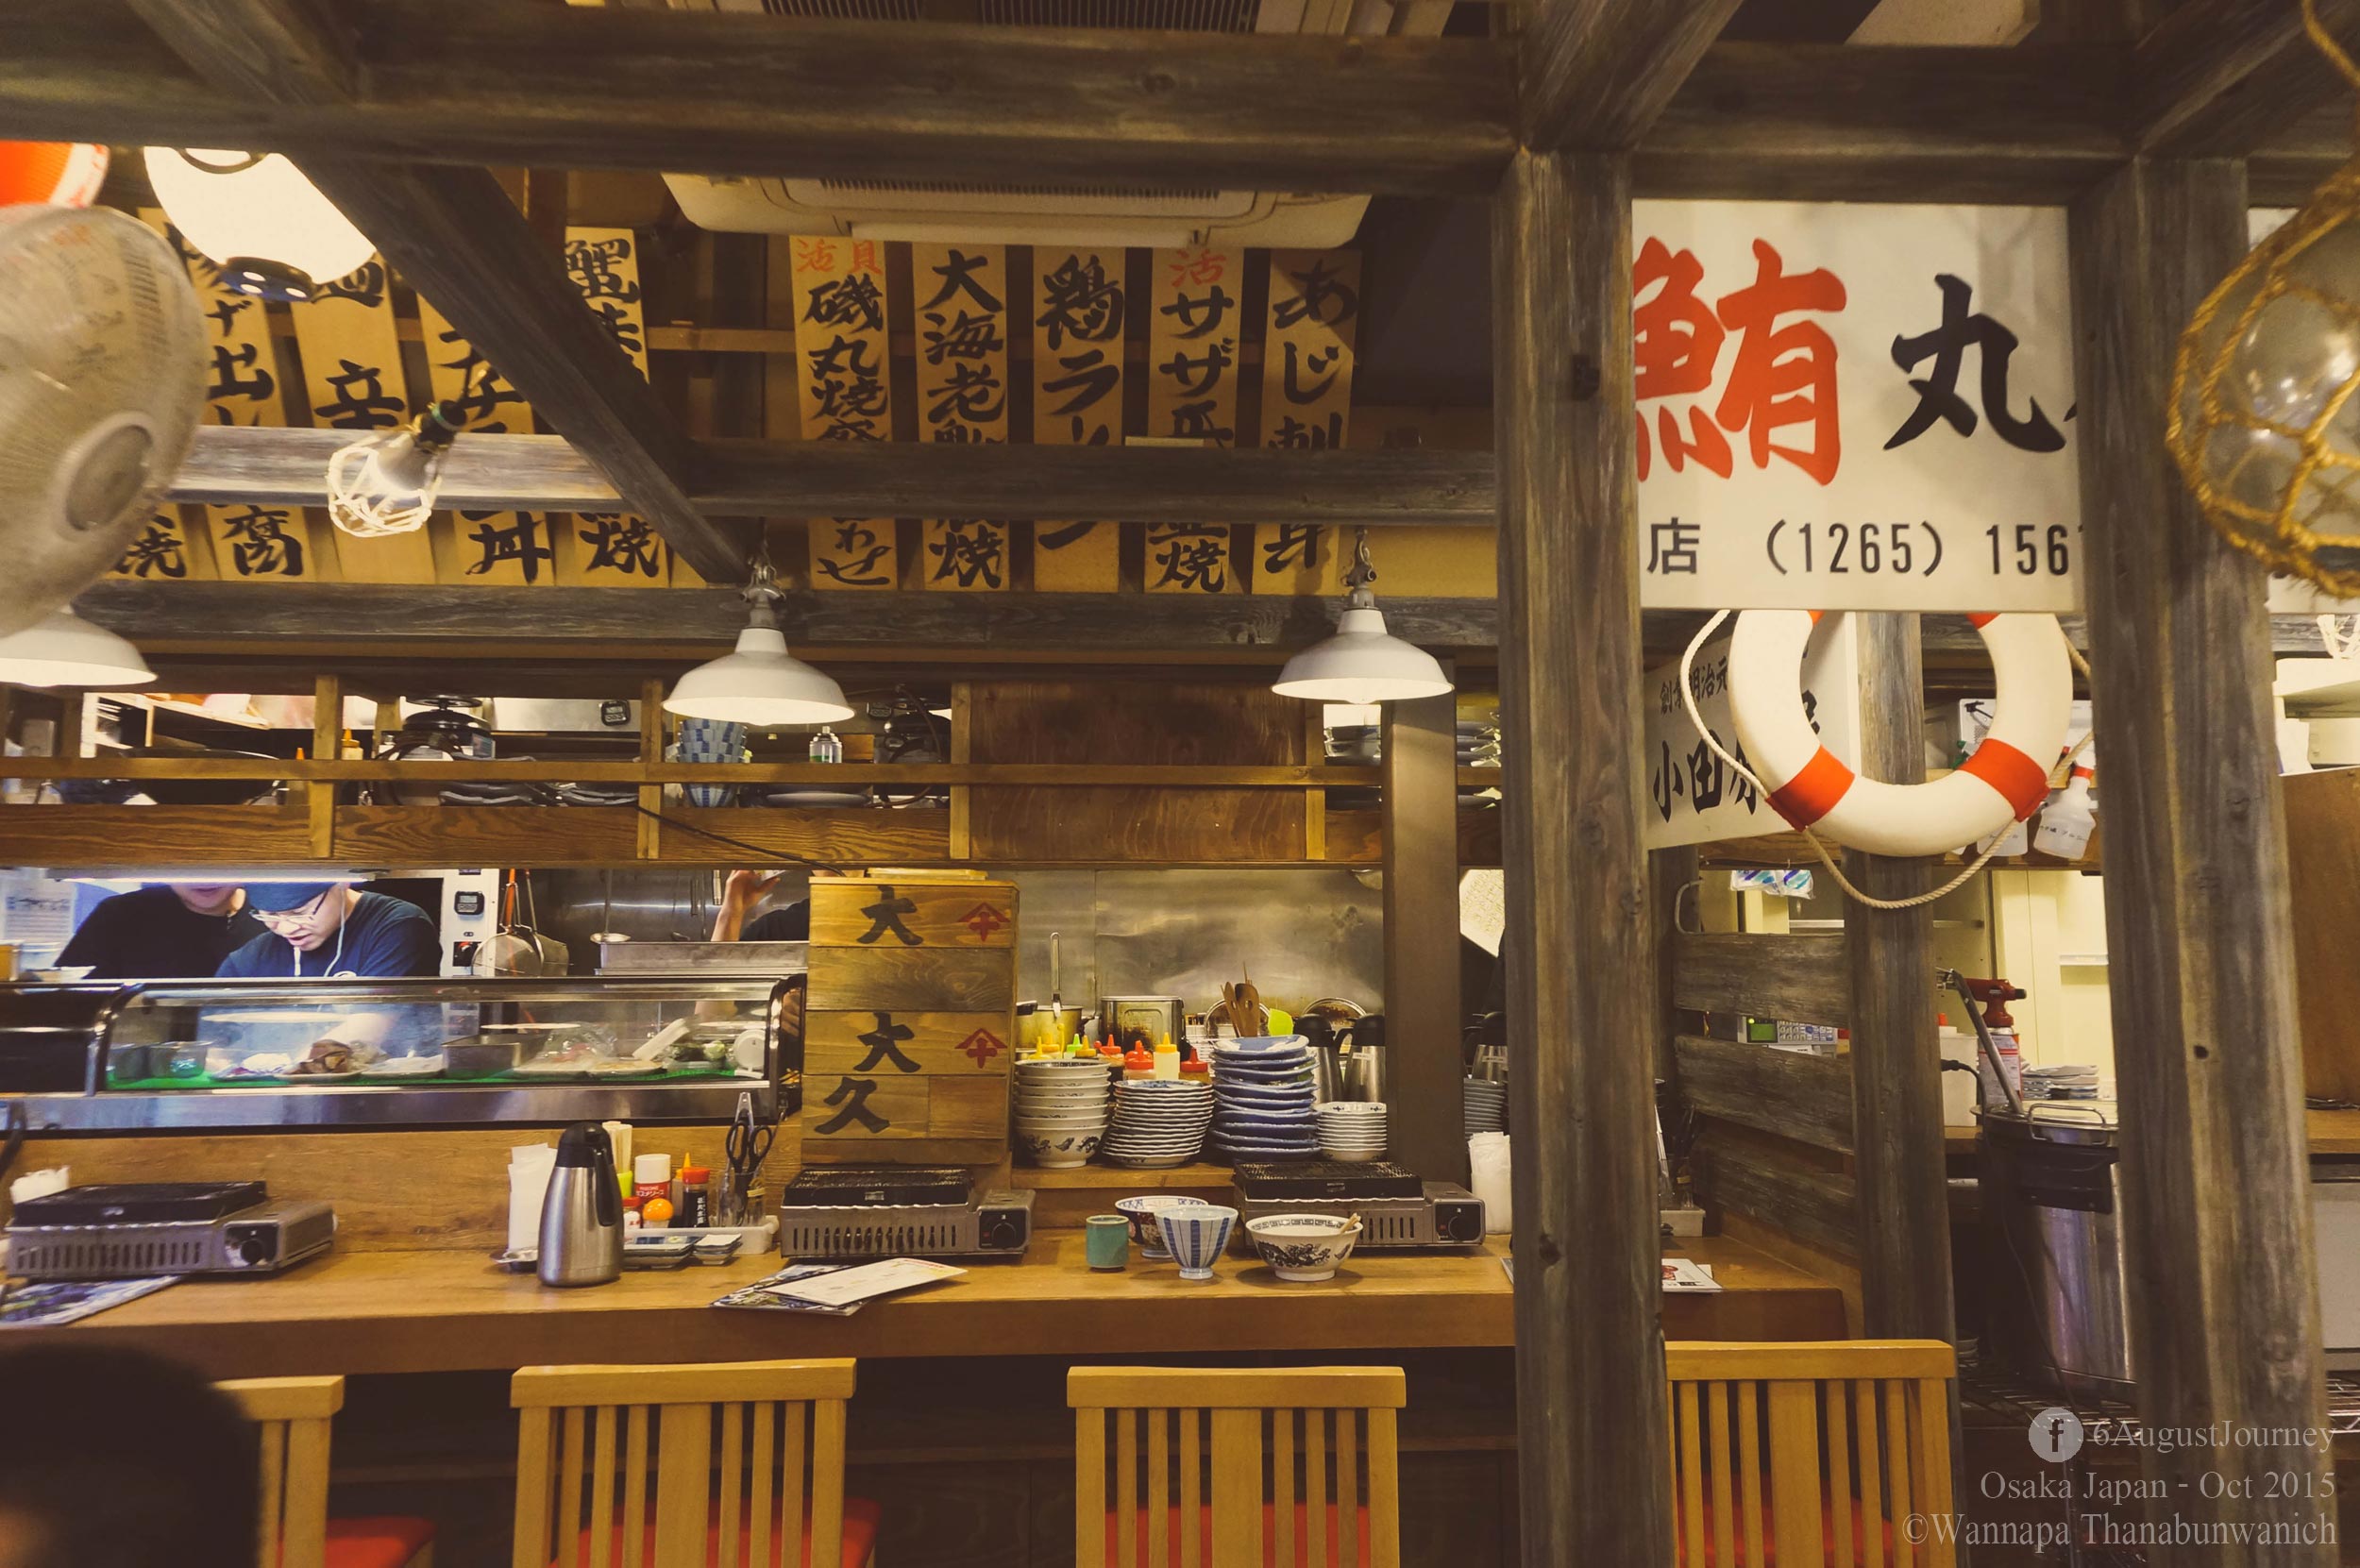 บรรยากาศในร้านค่ะ ที่ญี่ปุ่นดีอย่างตรงที่ถ้ามาคนเดียวก็มีเตาเดี่ยวให้ที่เคาเตอร์